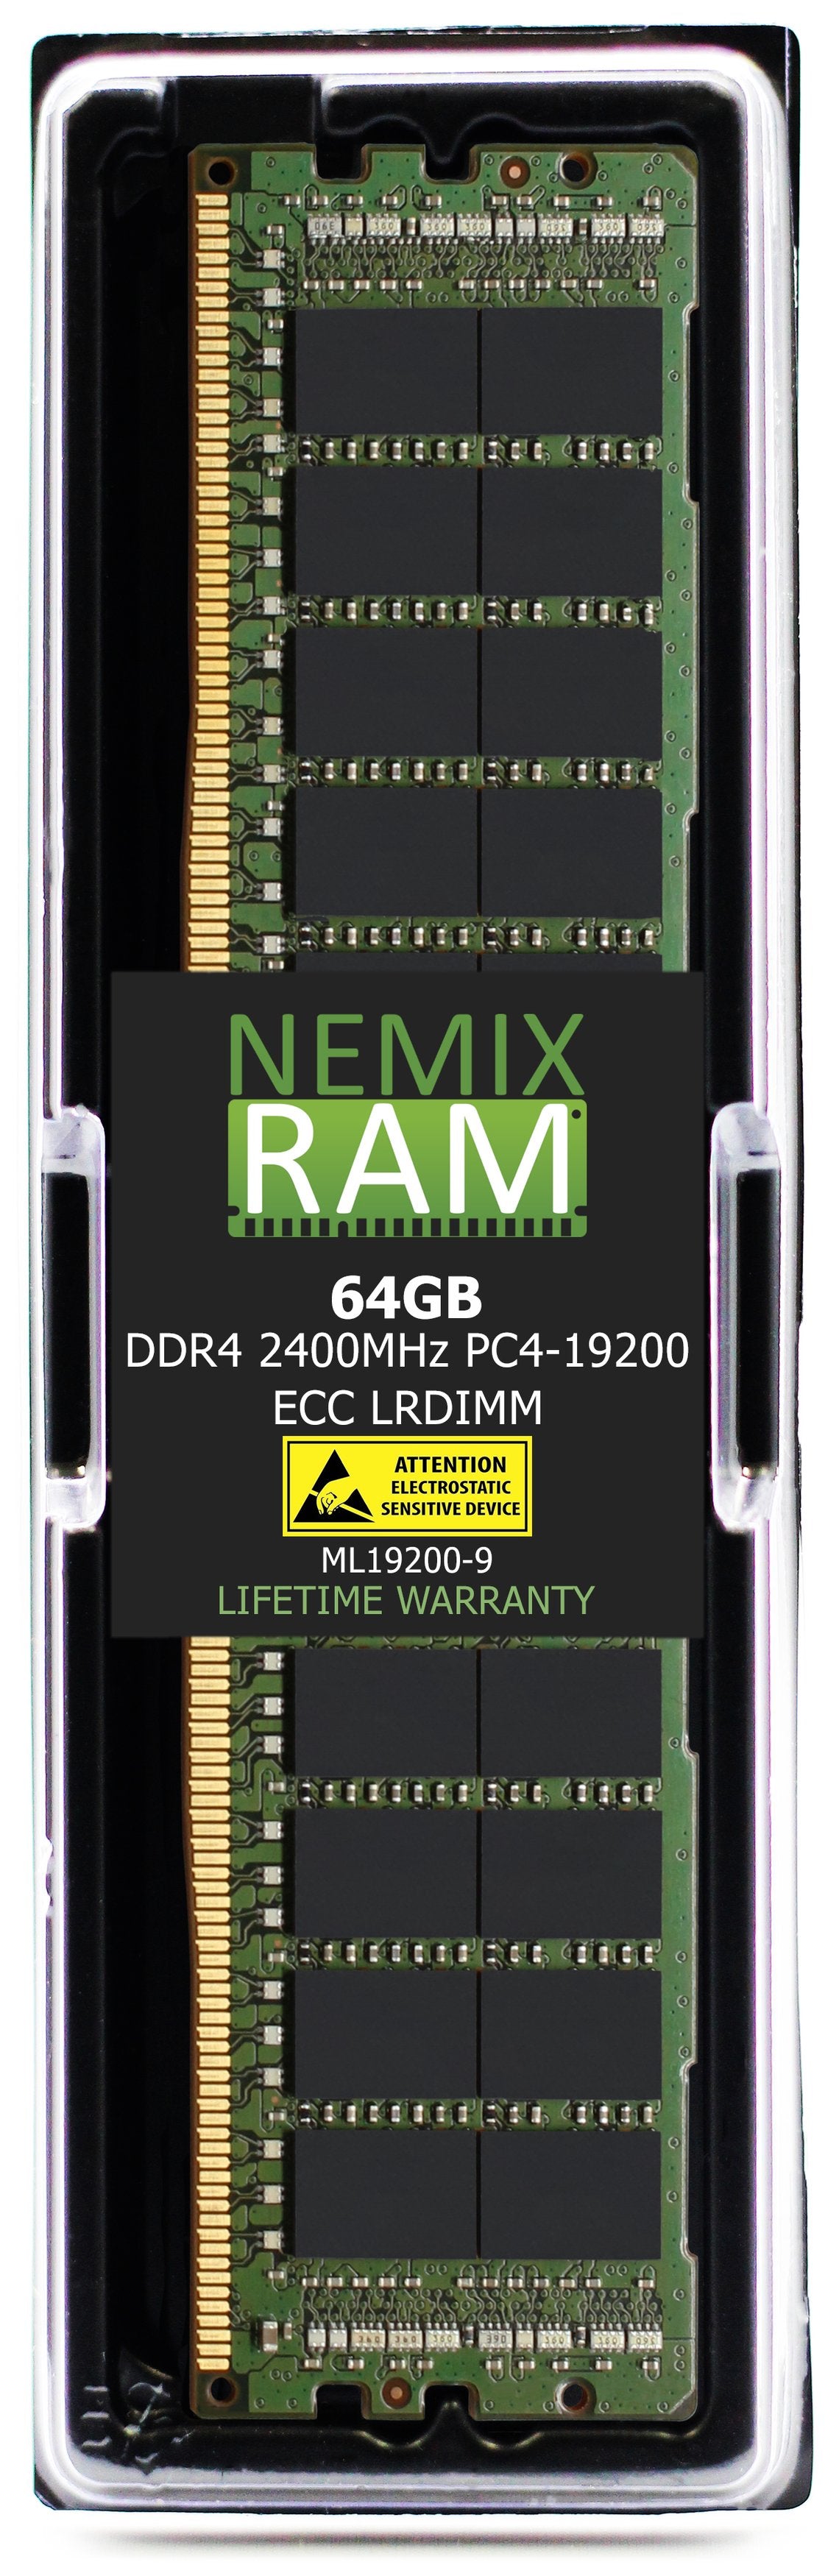 64GB DDR4 2400MHZ PC4-19200 LRDIMM Compatible with Supermicro MEM-DR464L-HL01-LR24